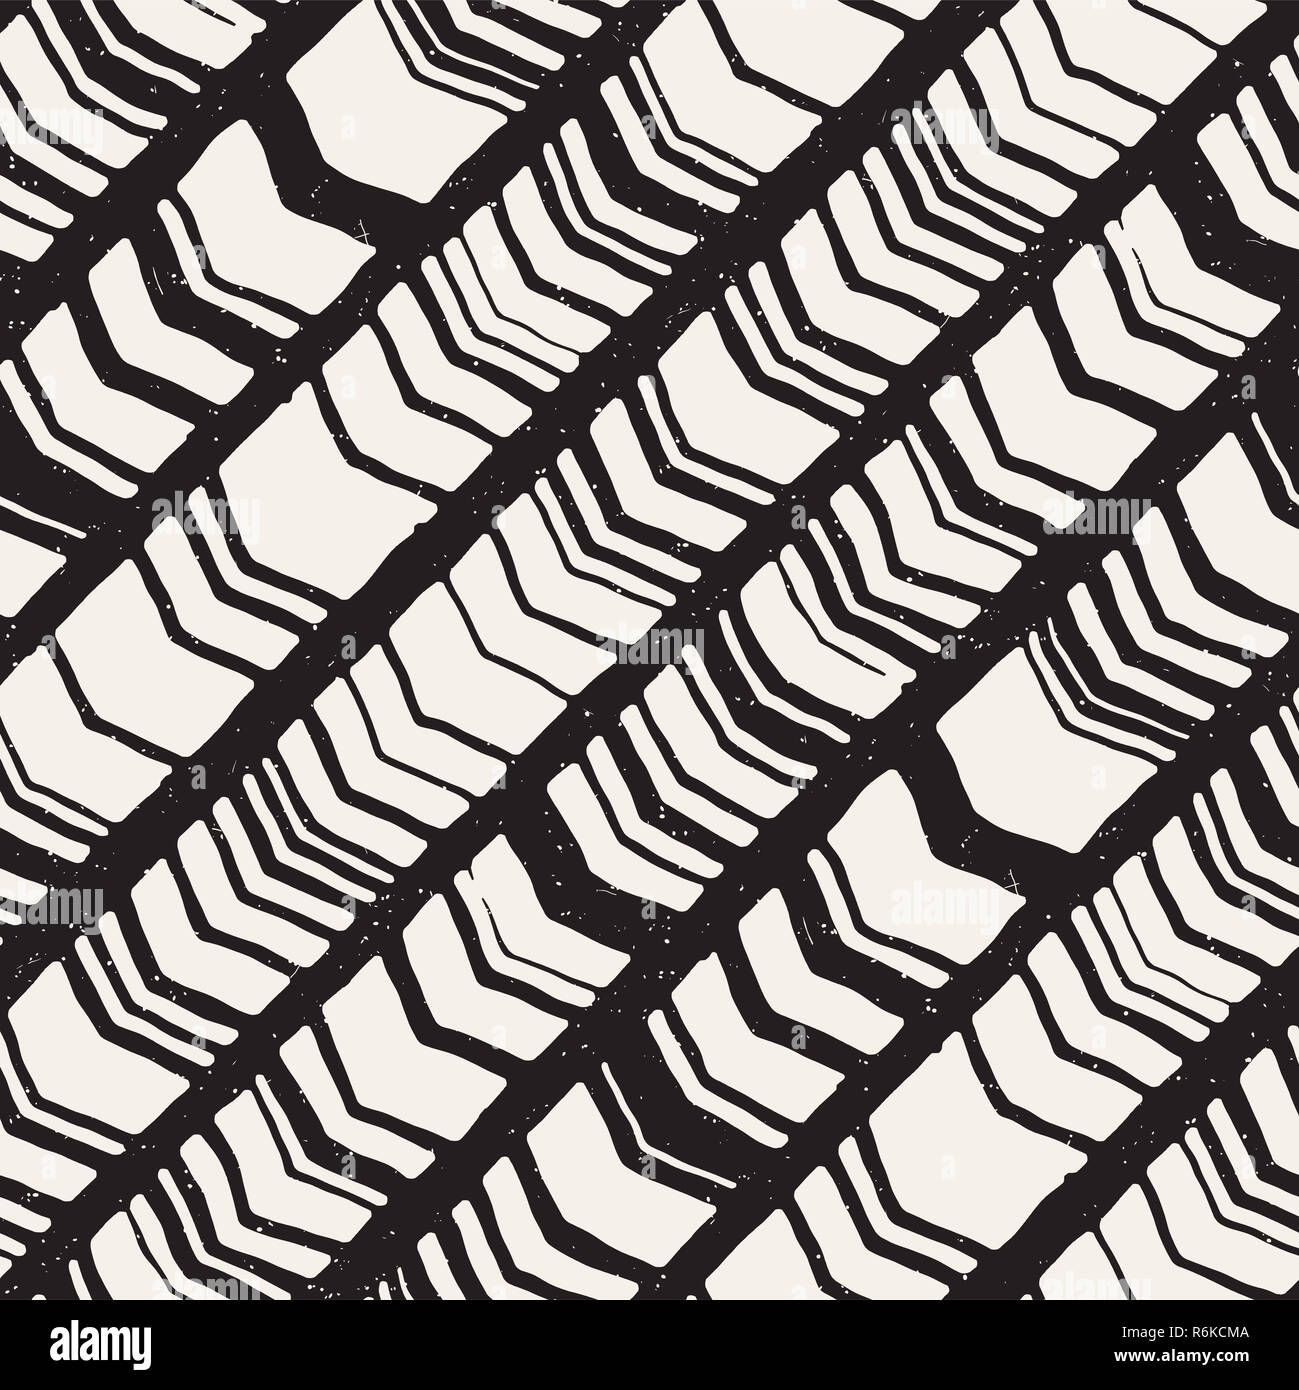 Vektor nahtlose freehand Muster. Doodle schwarzweißdruck von Hand gezeichnet Chevron Textur. Trendy Grafikdesign. Stockfoto